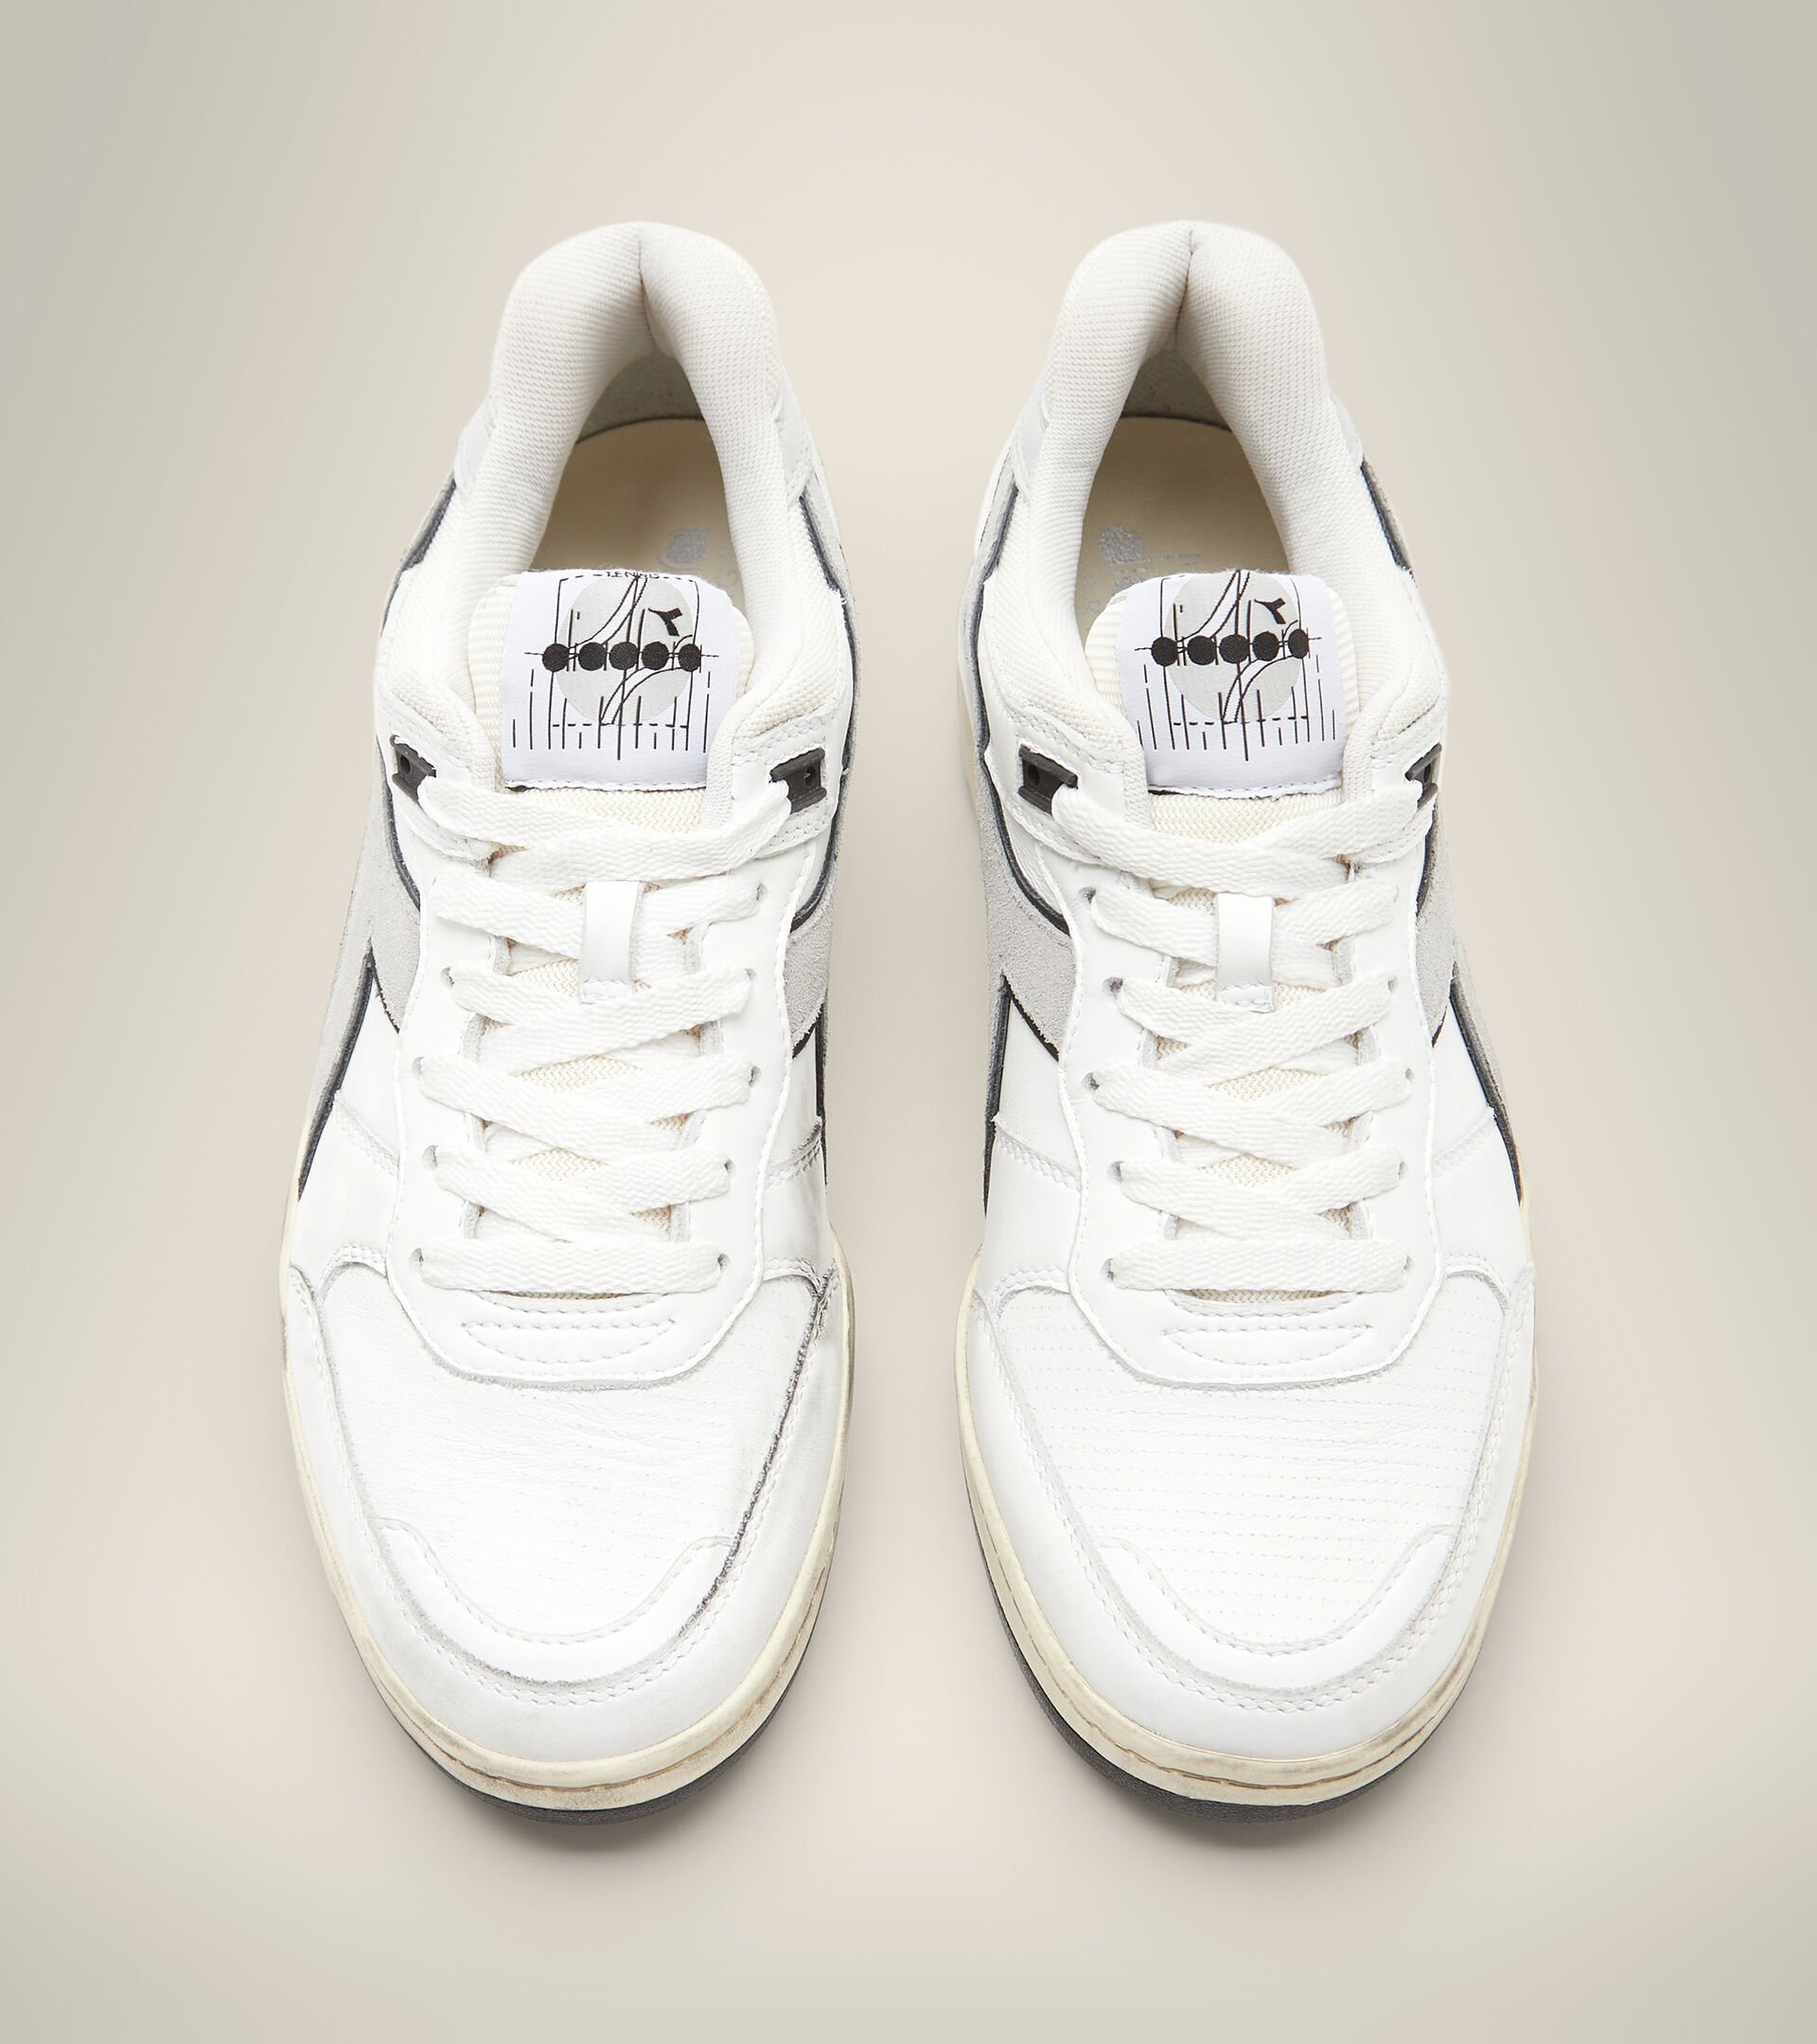 Made in Italy Heritage shoe - Unisex B.560 USED ITALIA WHITE /ALUMINUM - Diadora